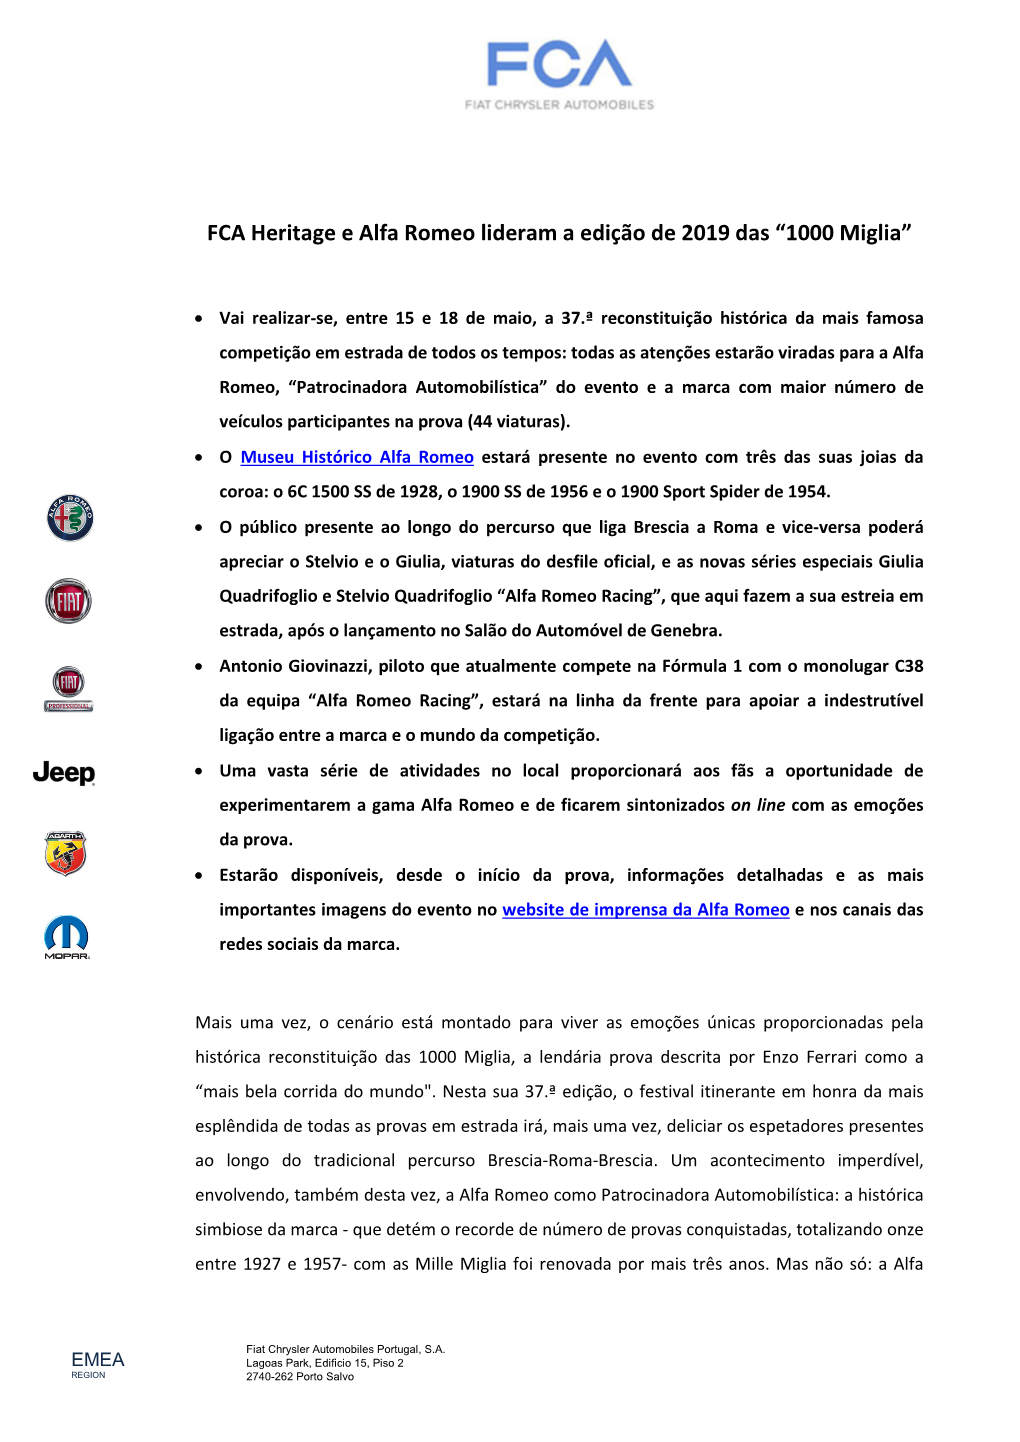 FCA Heritage E Alfa Romeo Lideram a Edição De 2019 Das “1000 Miglia”